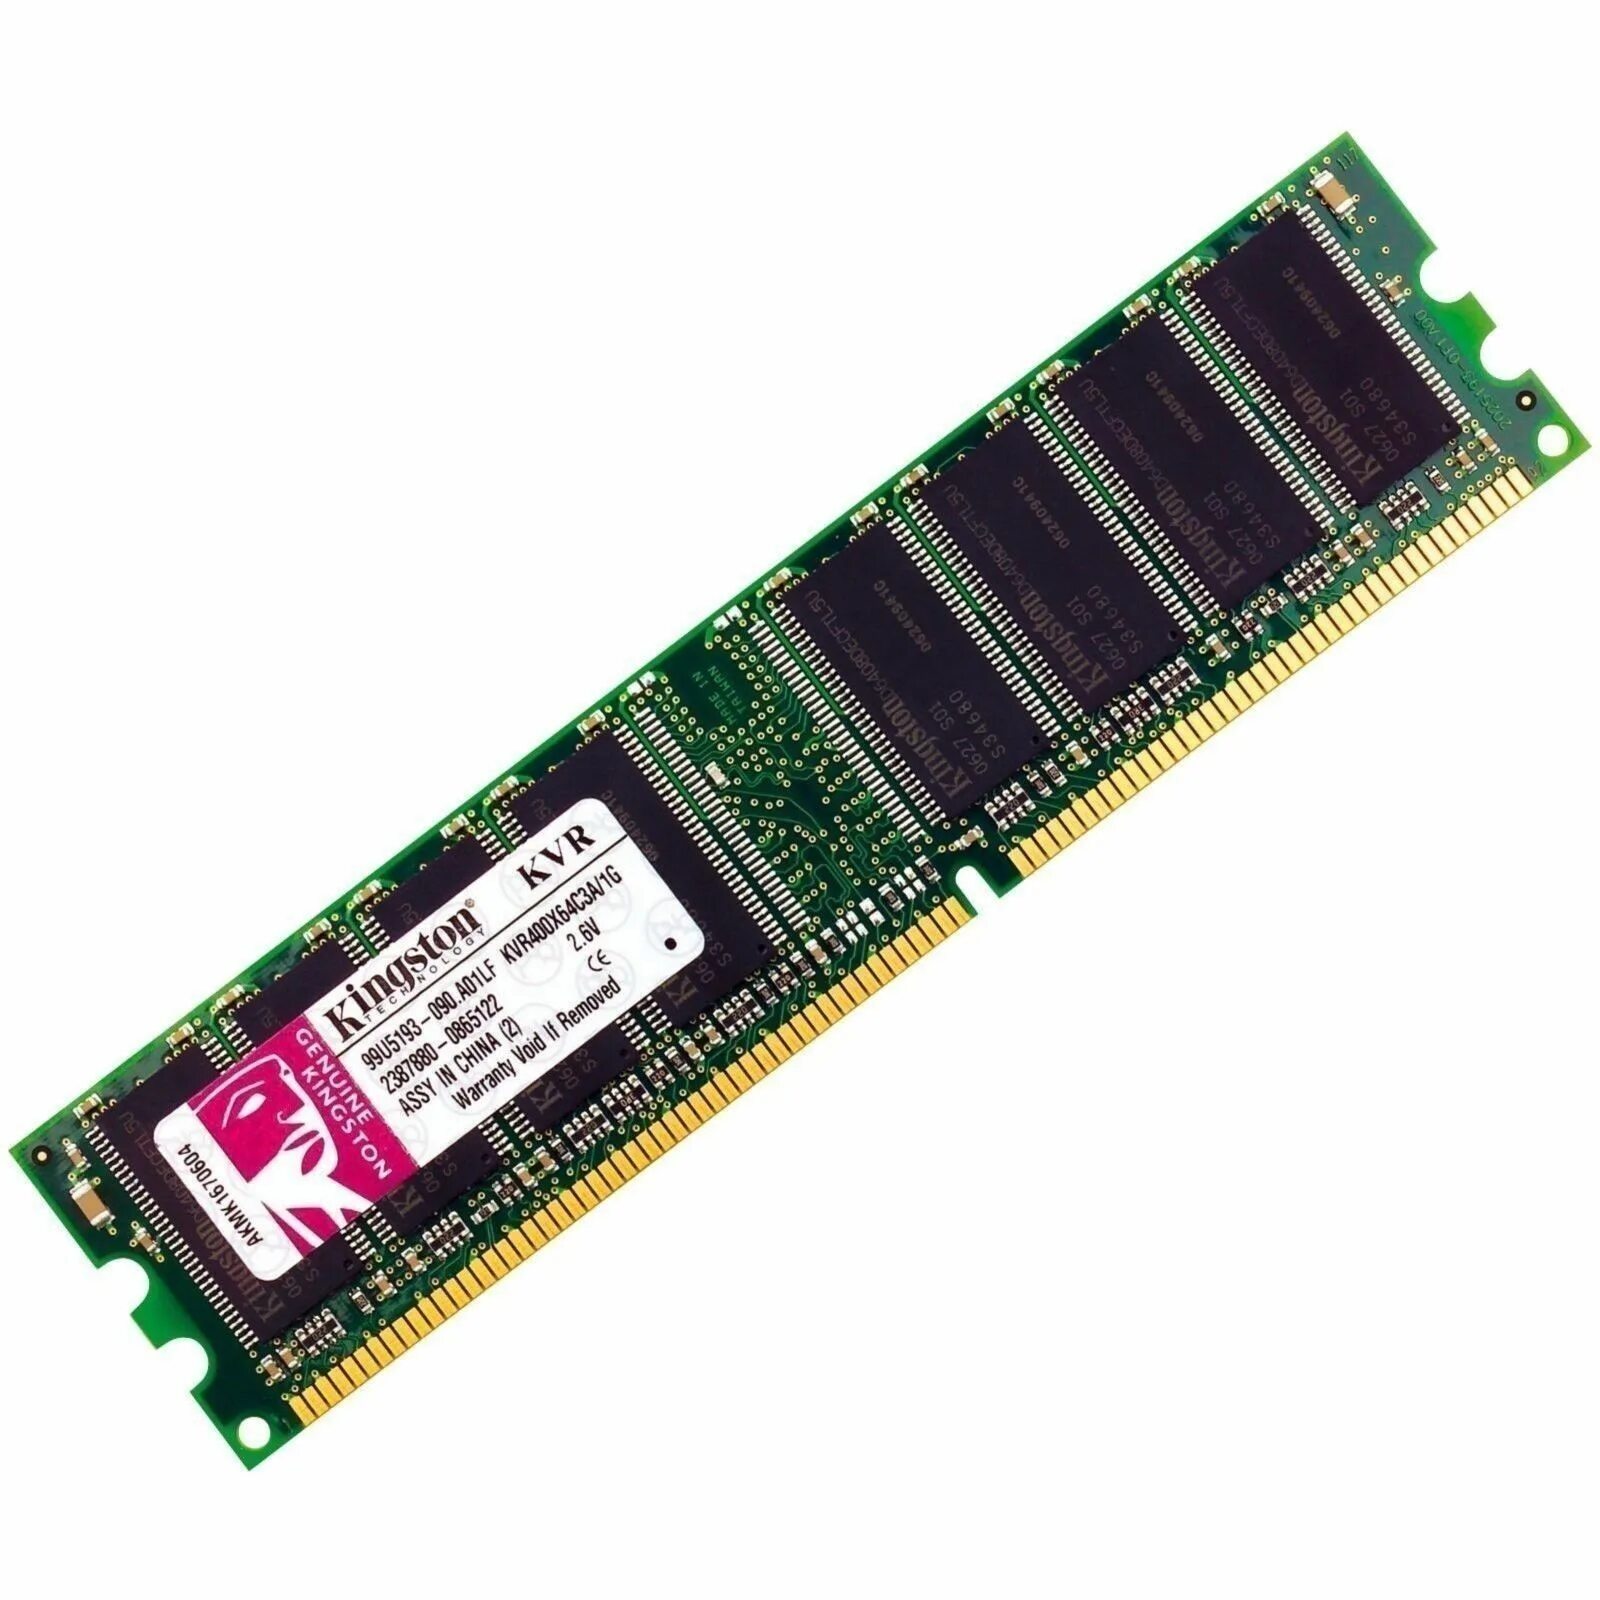 Ddr4 максимальная память. Kingston kvr400x64c3a/1g. Kvr400x64c3a/1g. Оперативная память DDR 400 MHZ. Оперативная память 1 ГБ 1 шт. Kingmax DDR 400 so-DIMM 1 GB.